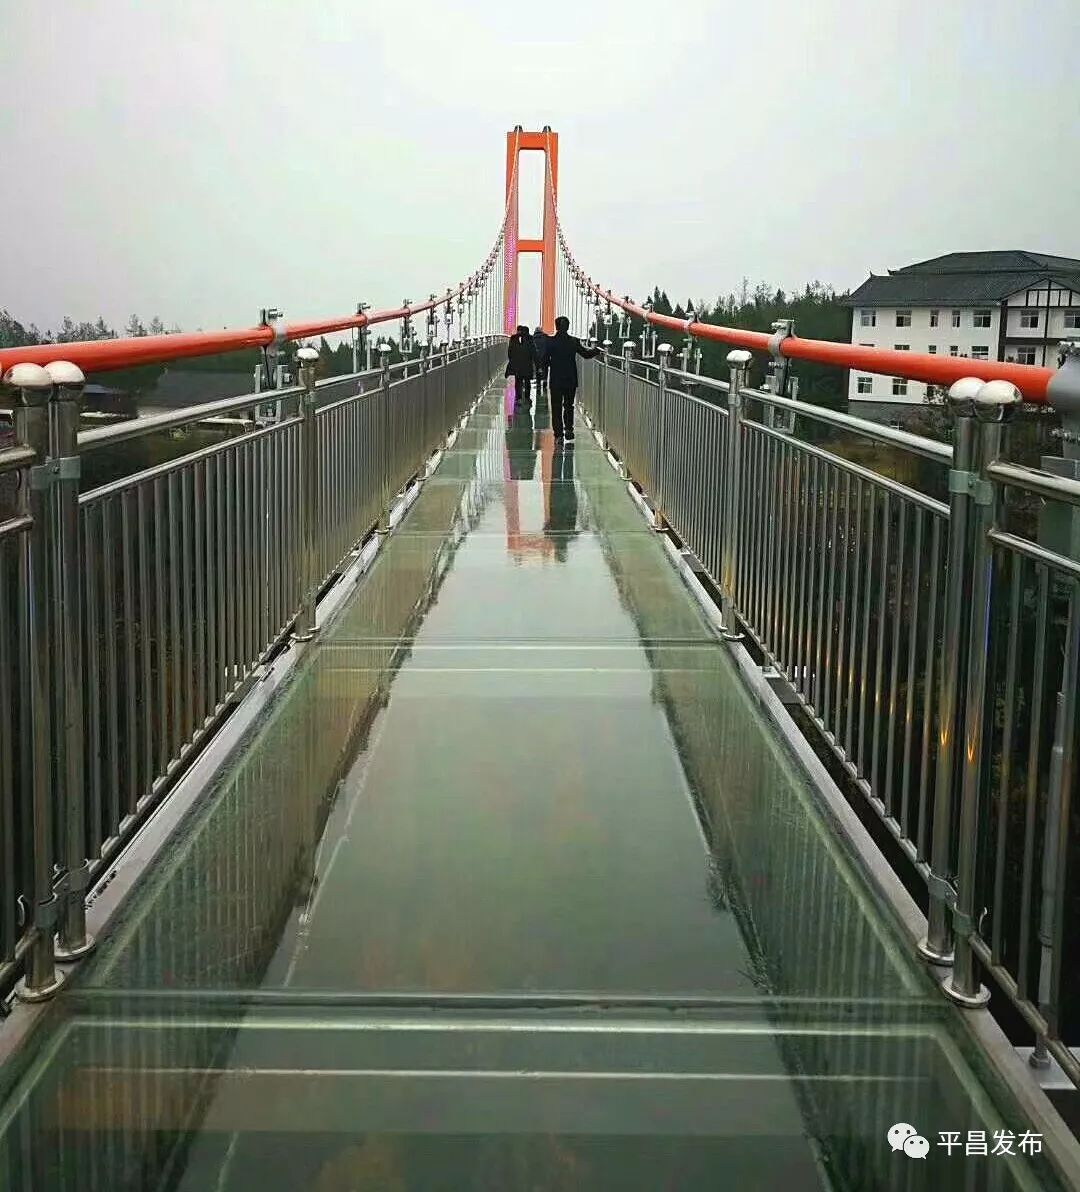 12月29日平昌驷马水乡玻璃桥开园迎客